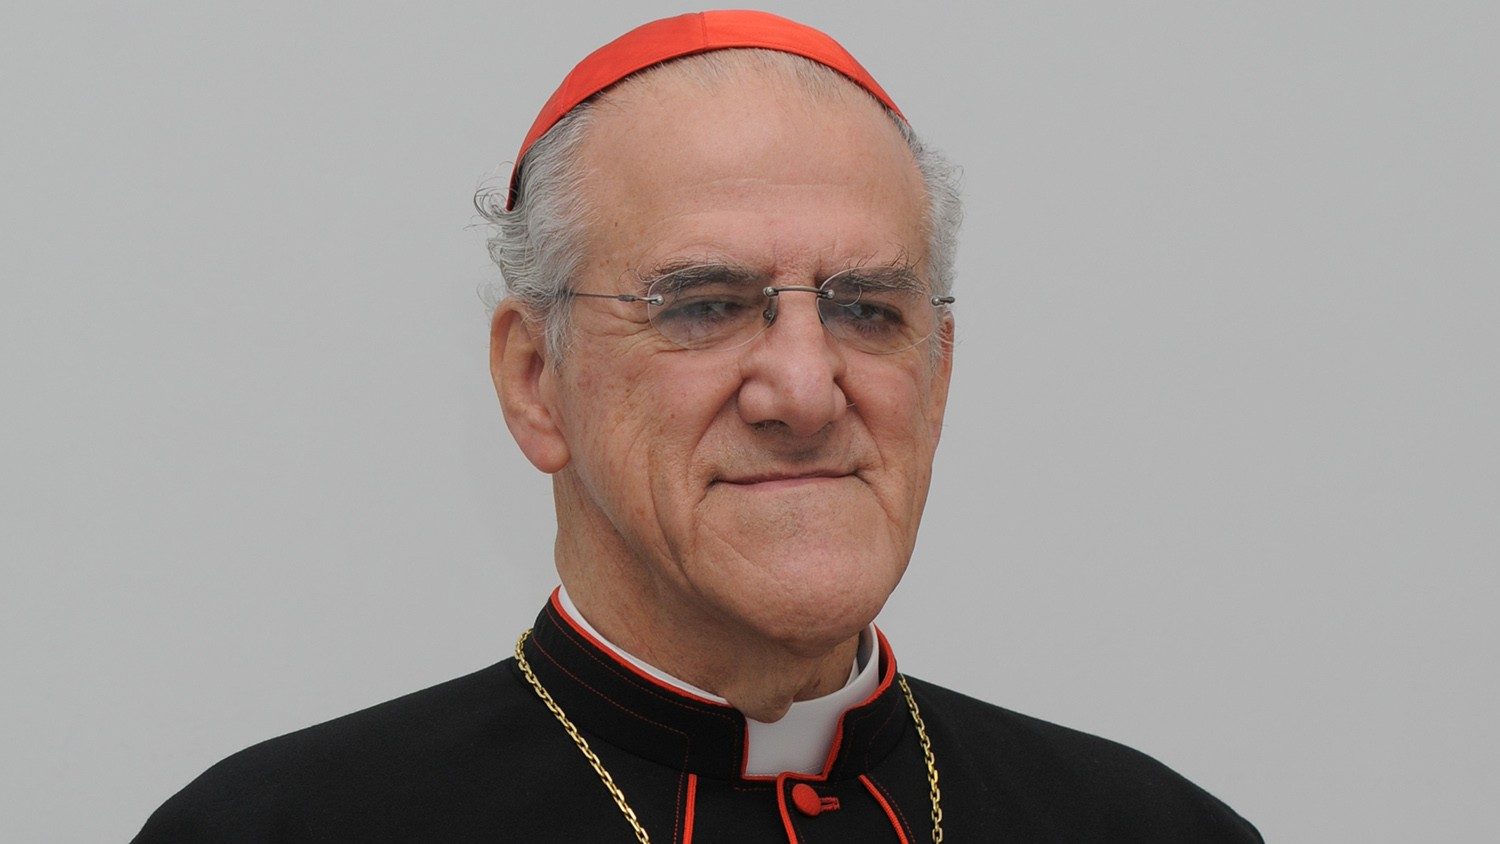 Muere en Roma el cardenal mexicano Javier Lozano Barragán